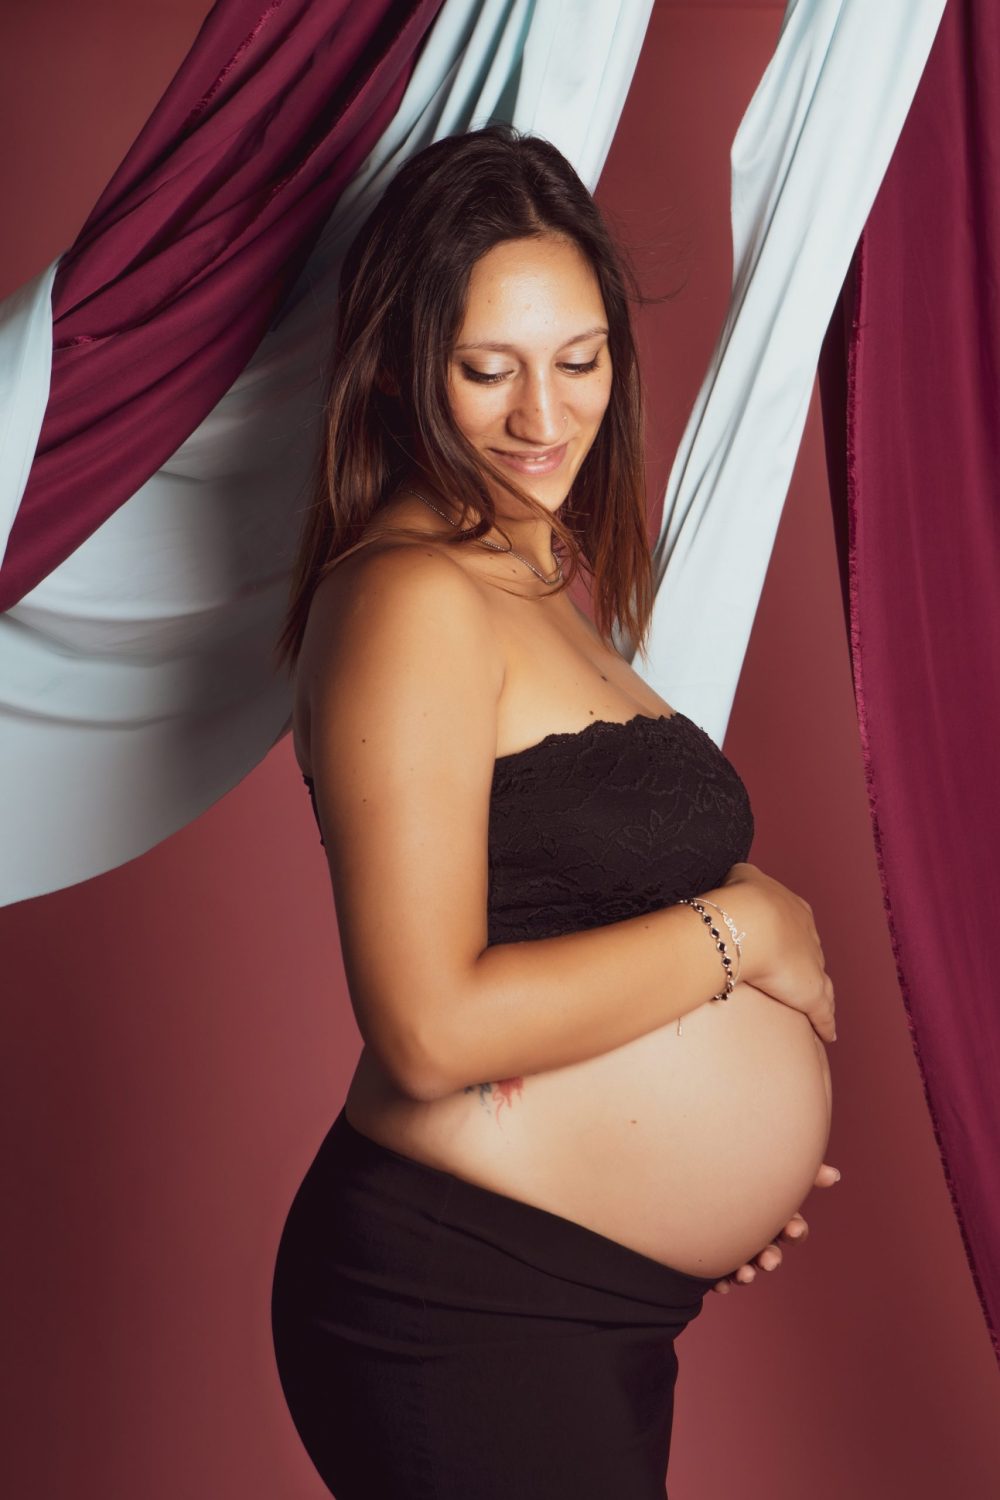 fotografia pancia donna incinta sorriso felice gravidanza maternità dolce attesa 